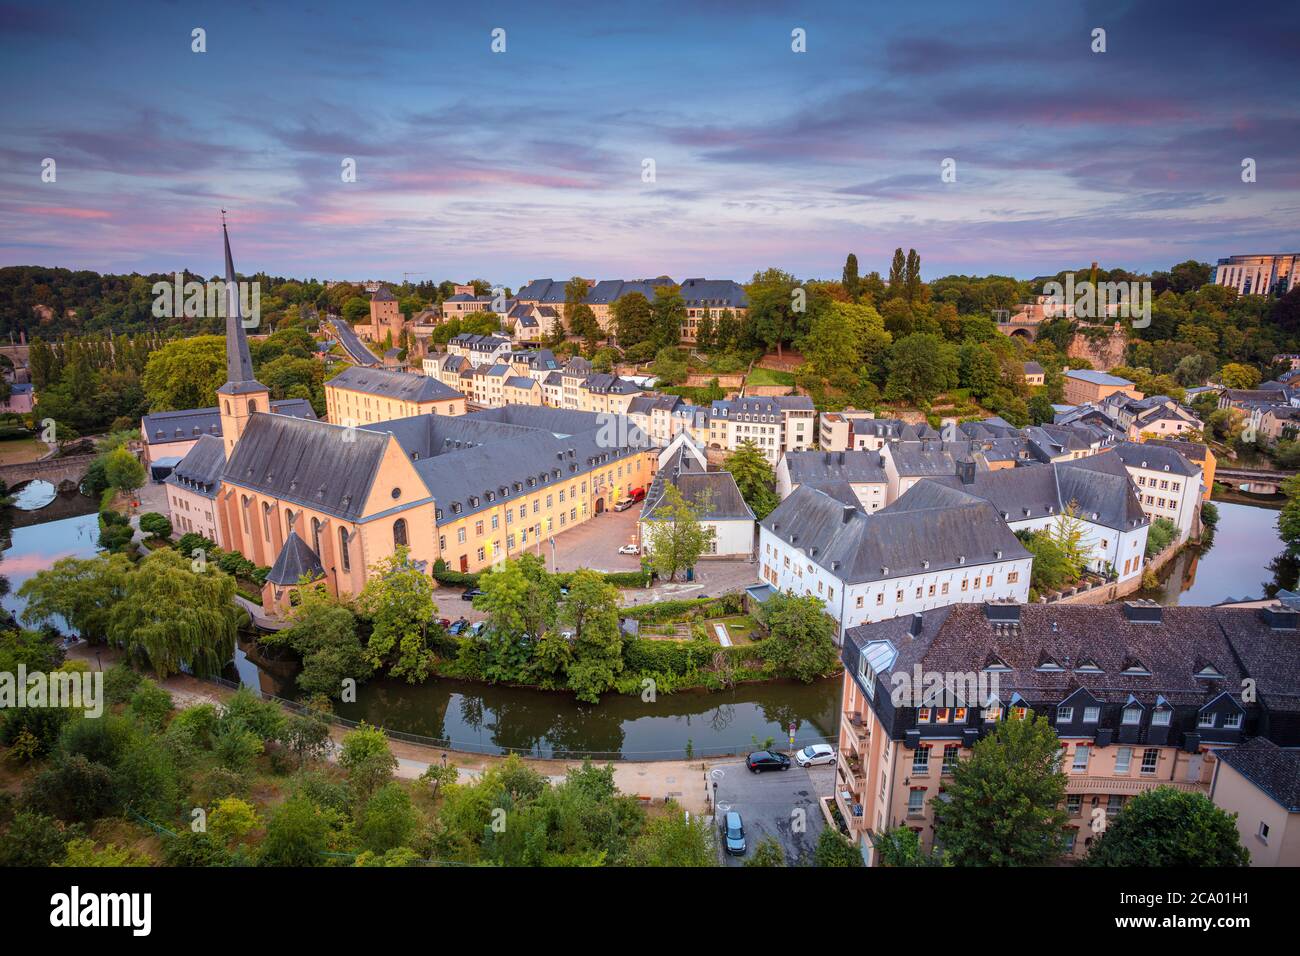 Luxemburg-Stadt. Luftbild Stadtbild der Altstadt von Luxemburg während des schönen Sommeruntergangs. Stockfoto